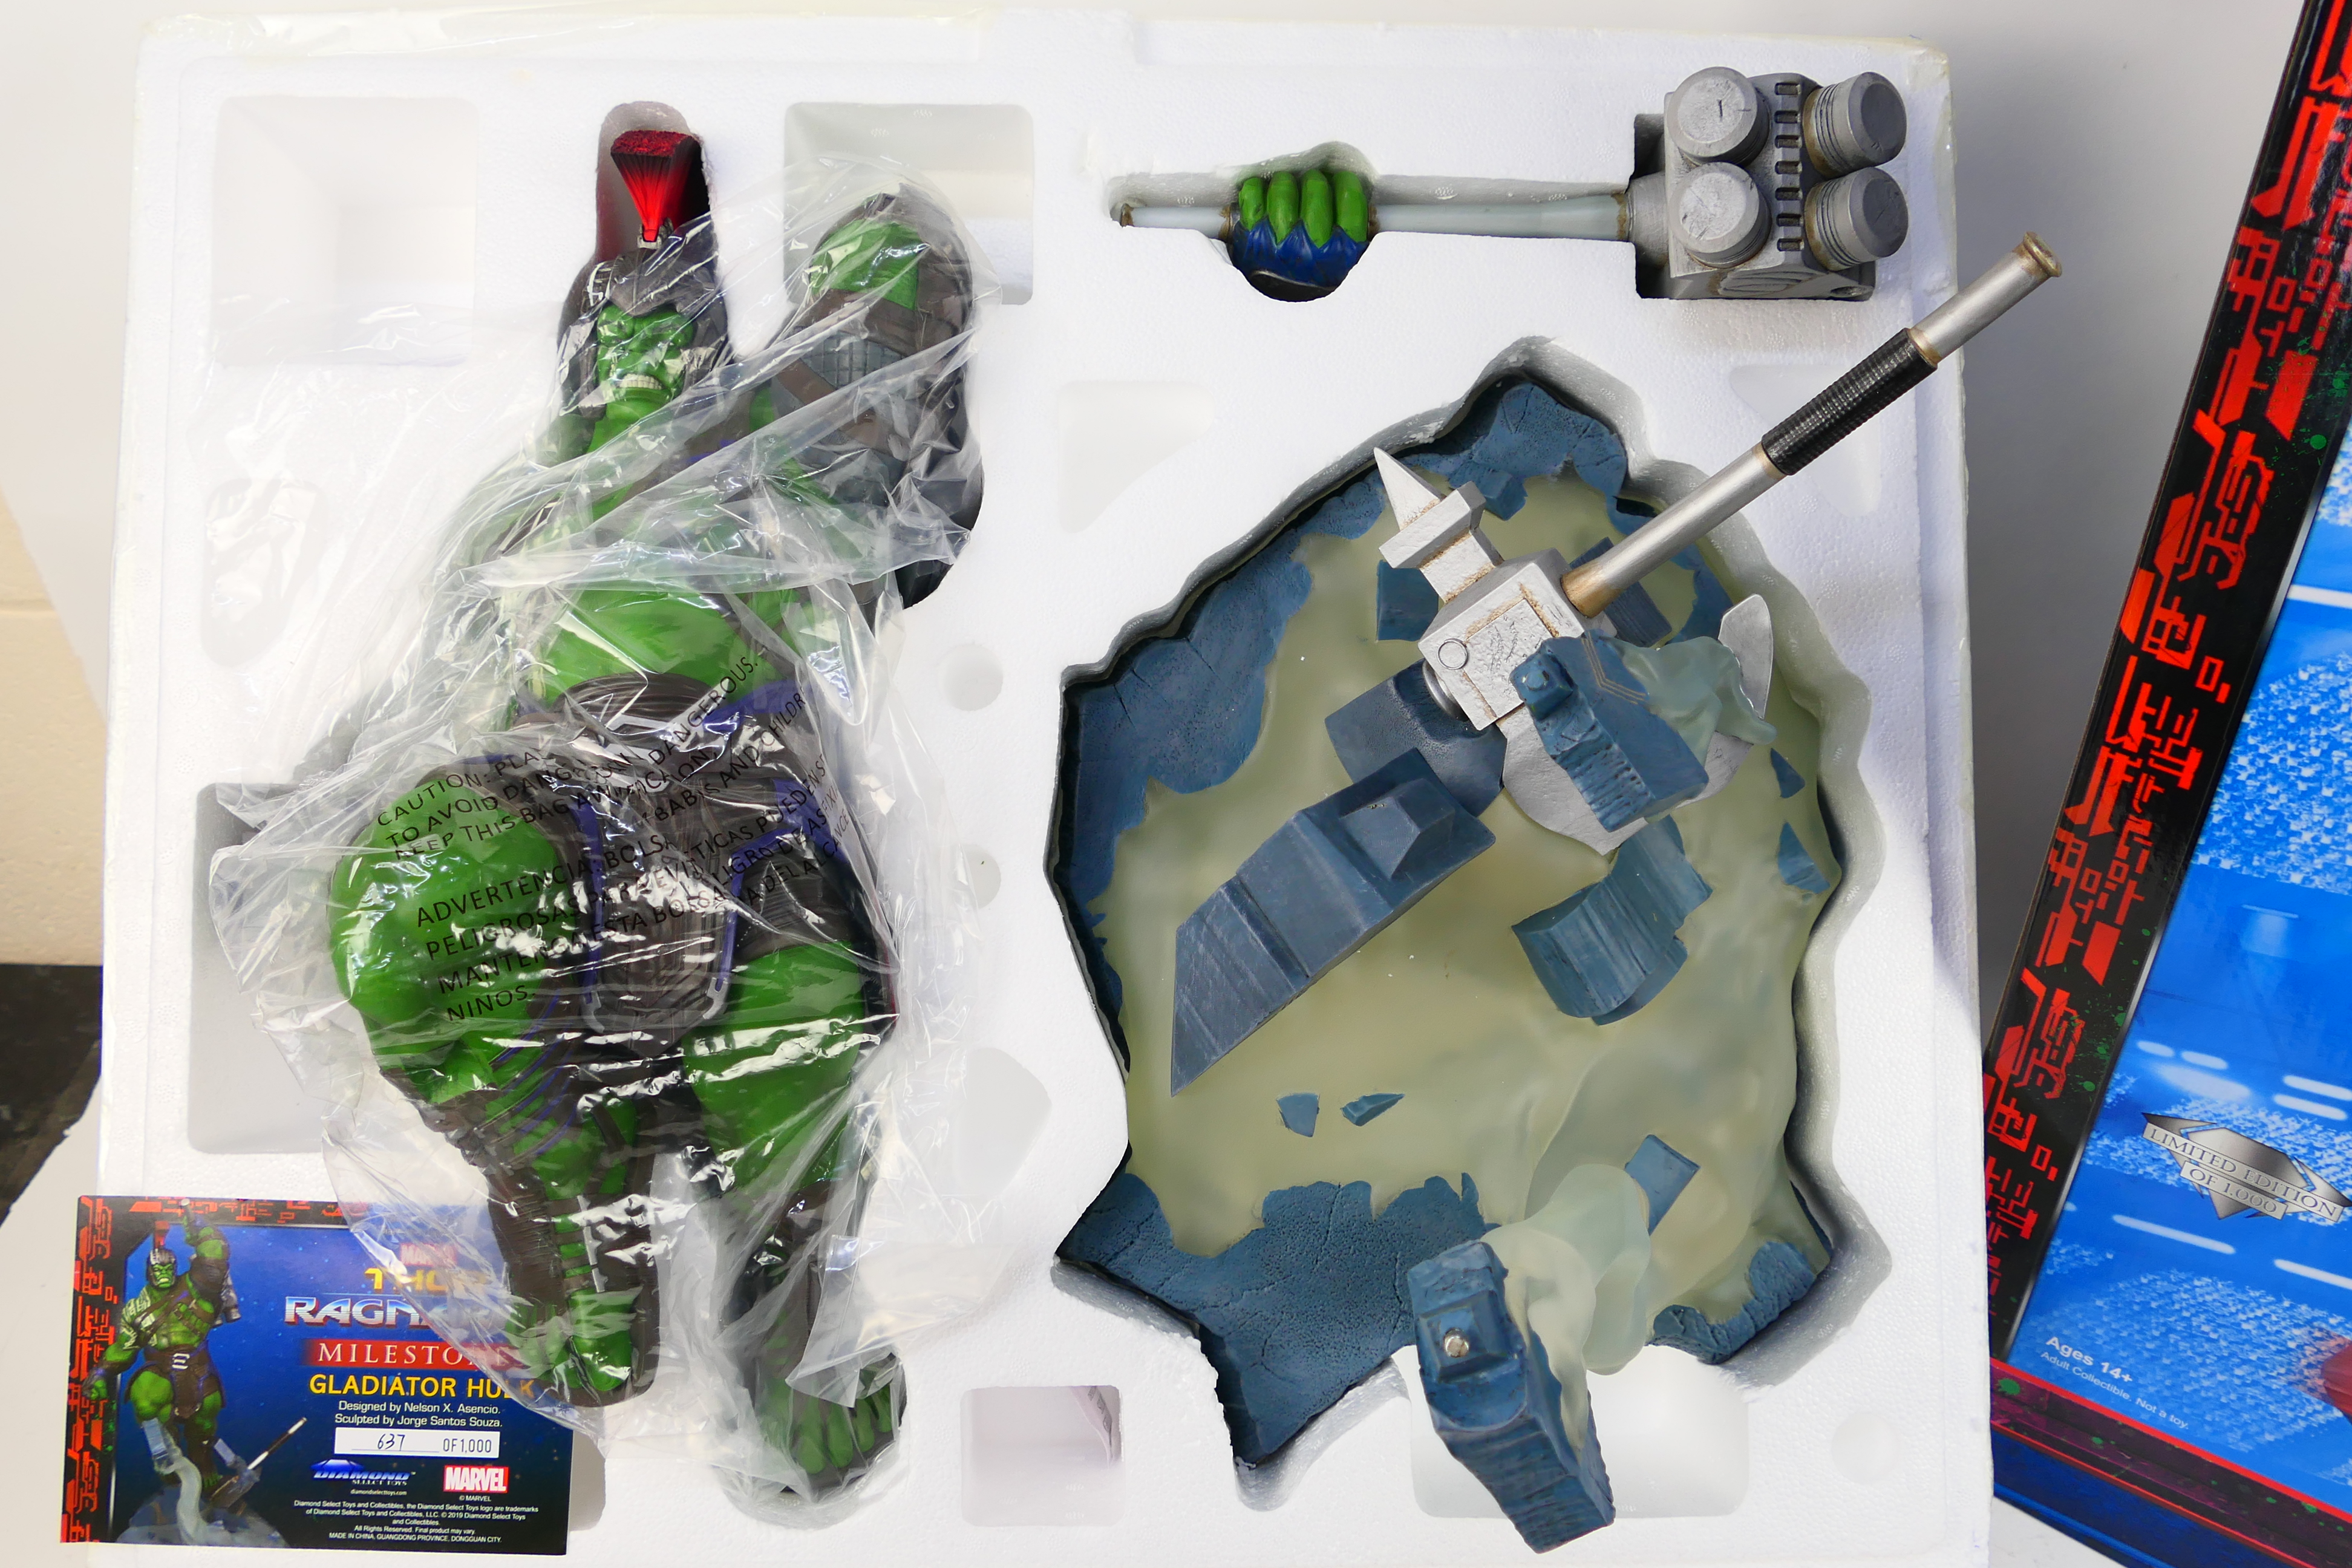 Diamond Select Toys - Marvel - A limited edition Marvel Thor Ragnarok Milestones Gladiator Hulk 23 - Image 2 of 10